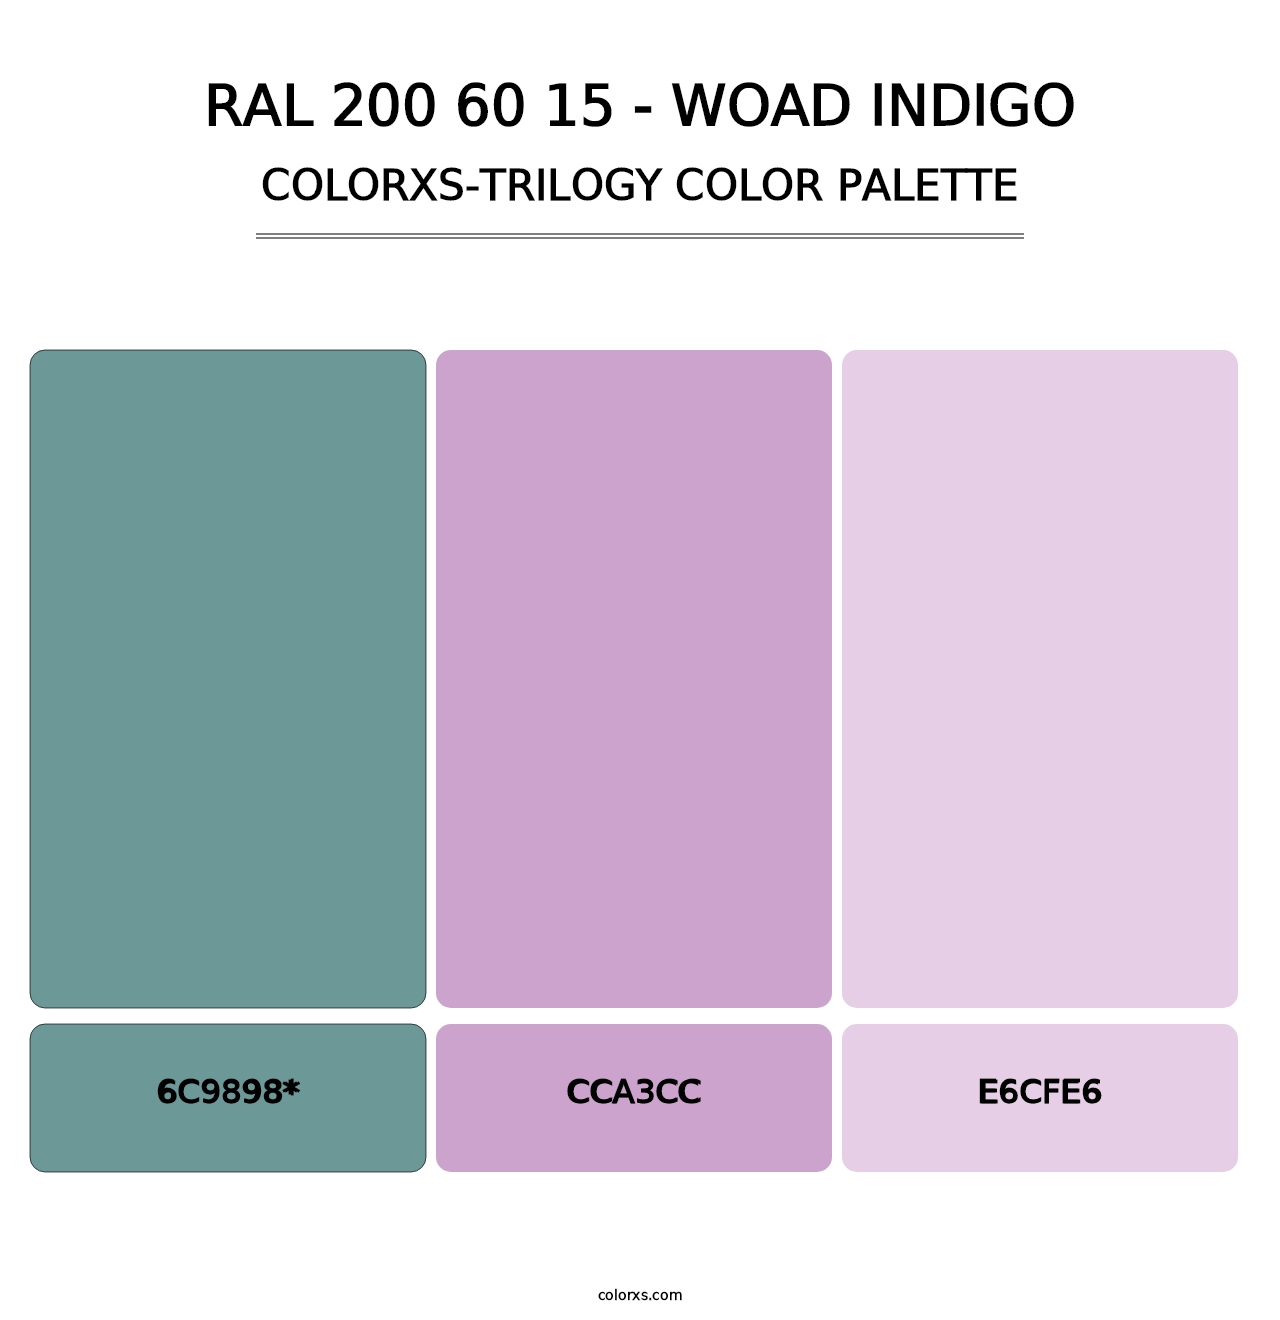 RAL 200 60 15 - Woad Indigo - Colorxs Trilogy Palette